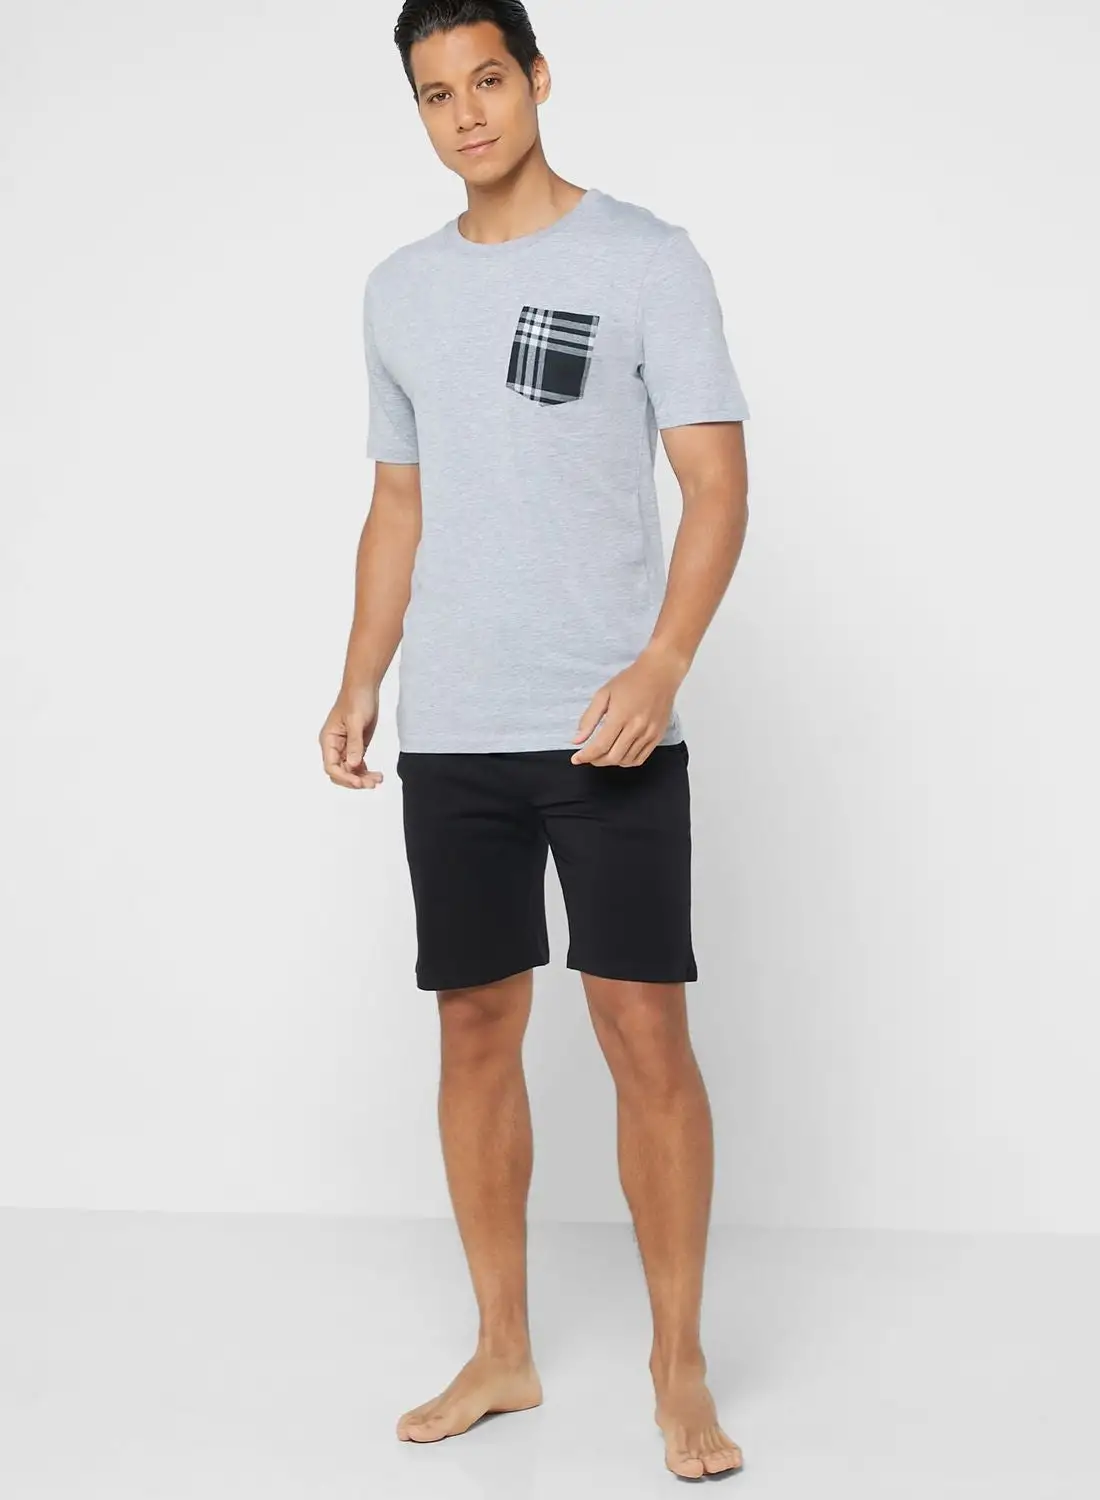 Seventy Five Pocket T Shirt Nightwear Set